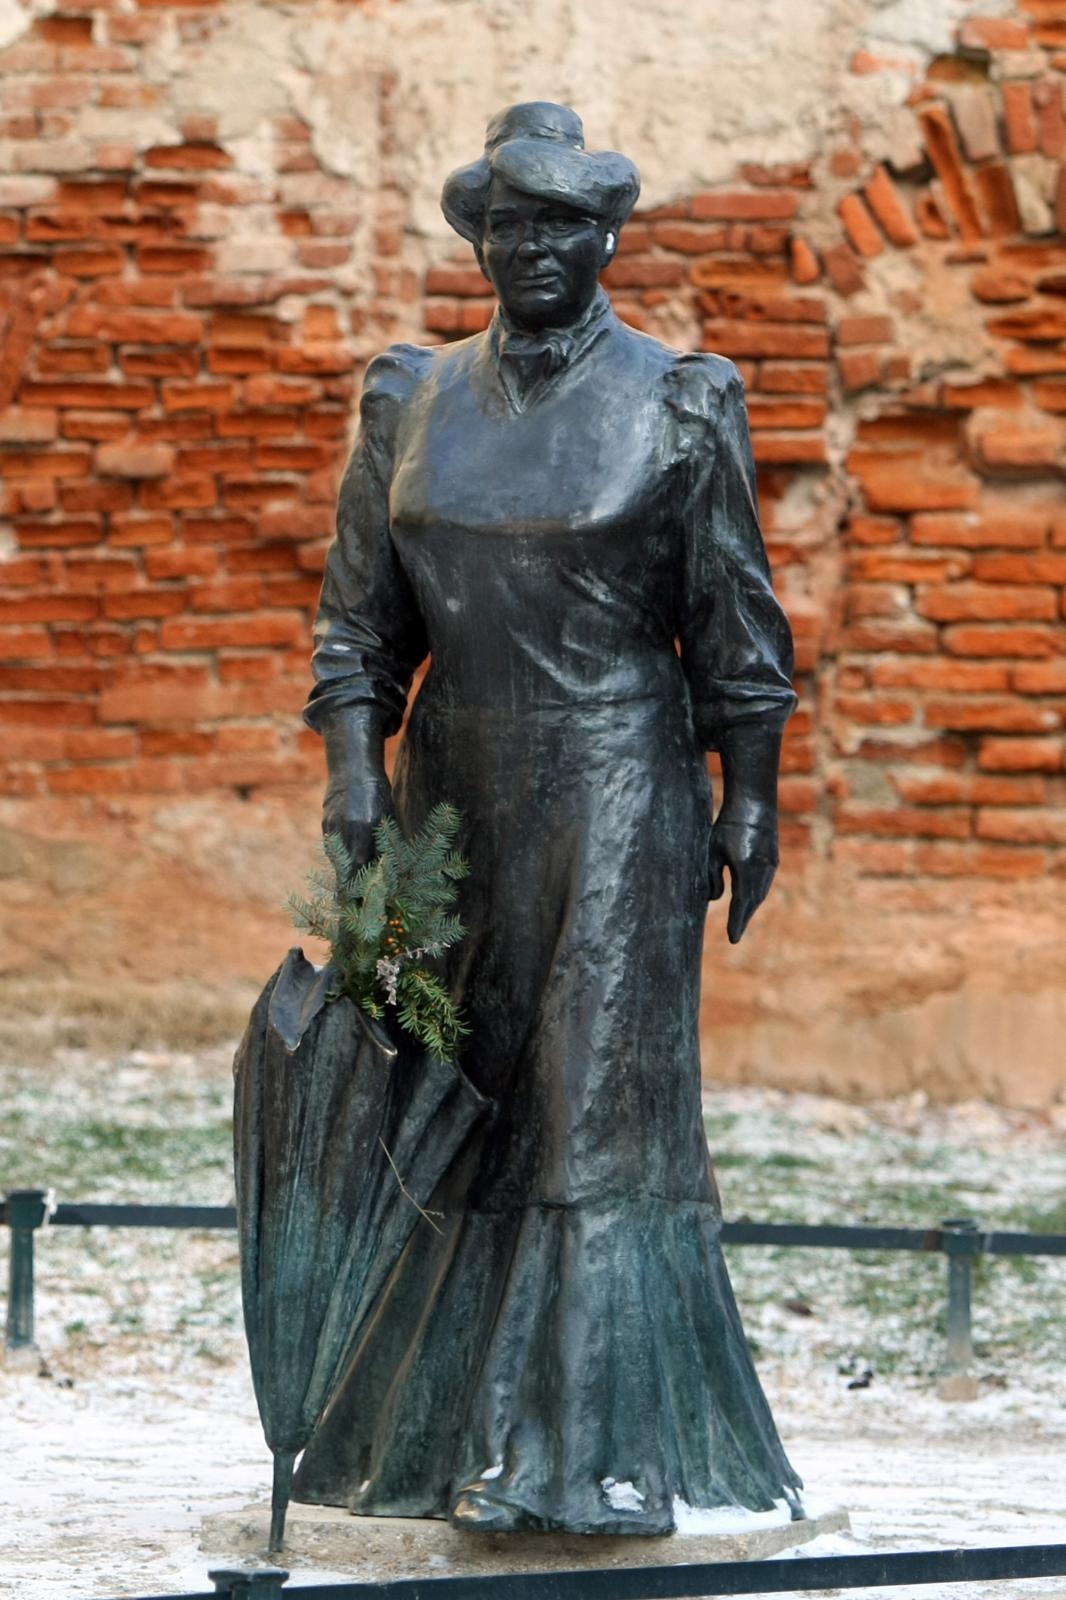 Dan nakon što je proglašena NDH, 11. travnja 1941., ustaše upadaju u Zagorkin stan na Dolcu, gdje se nalazila i redakcija časopisa Hrvatica. Zagorki je zabranjen rad, a imovina joj je oduzeta. I nakon rata njezin rad je otežan, iako je i dalje pisala, poglavito memoarska i autobiografska djela, ipak je doživljavala bojkot. Na fotografiji je statua Marije Jurić Zagorke u Tkalčićevoj ulici u Zagrebu, mjestu radnje brojnih njezinih priča. 